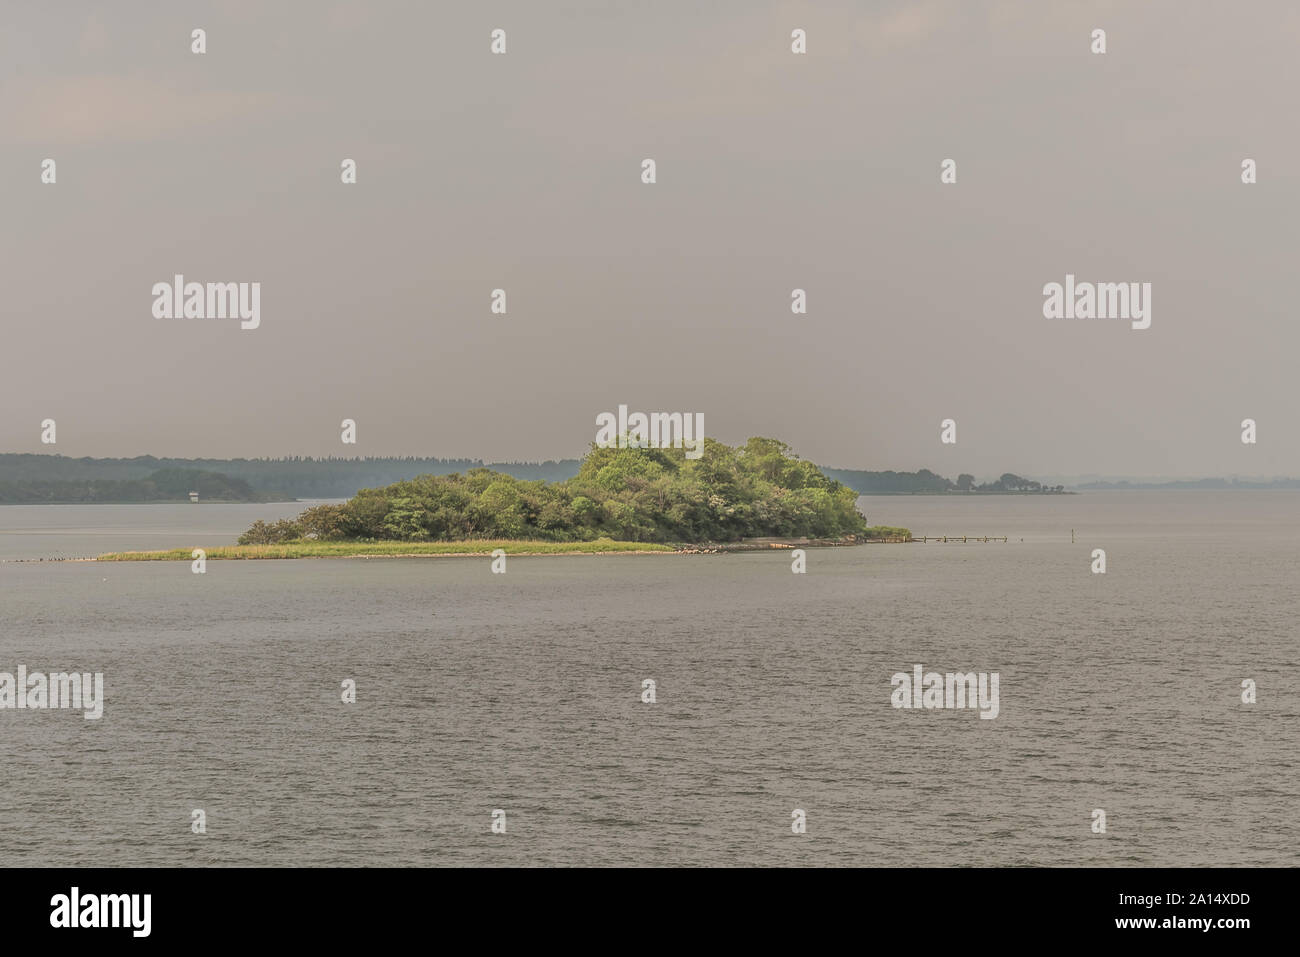 Eine kleine Insel mit grünen Bäumen und einem Steg im Meer in der Nähe von Svendborg, Dänemark, 13. Juli 2019 Stockfoto